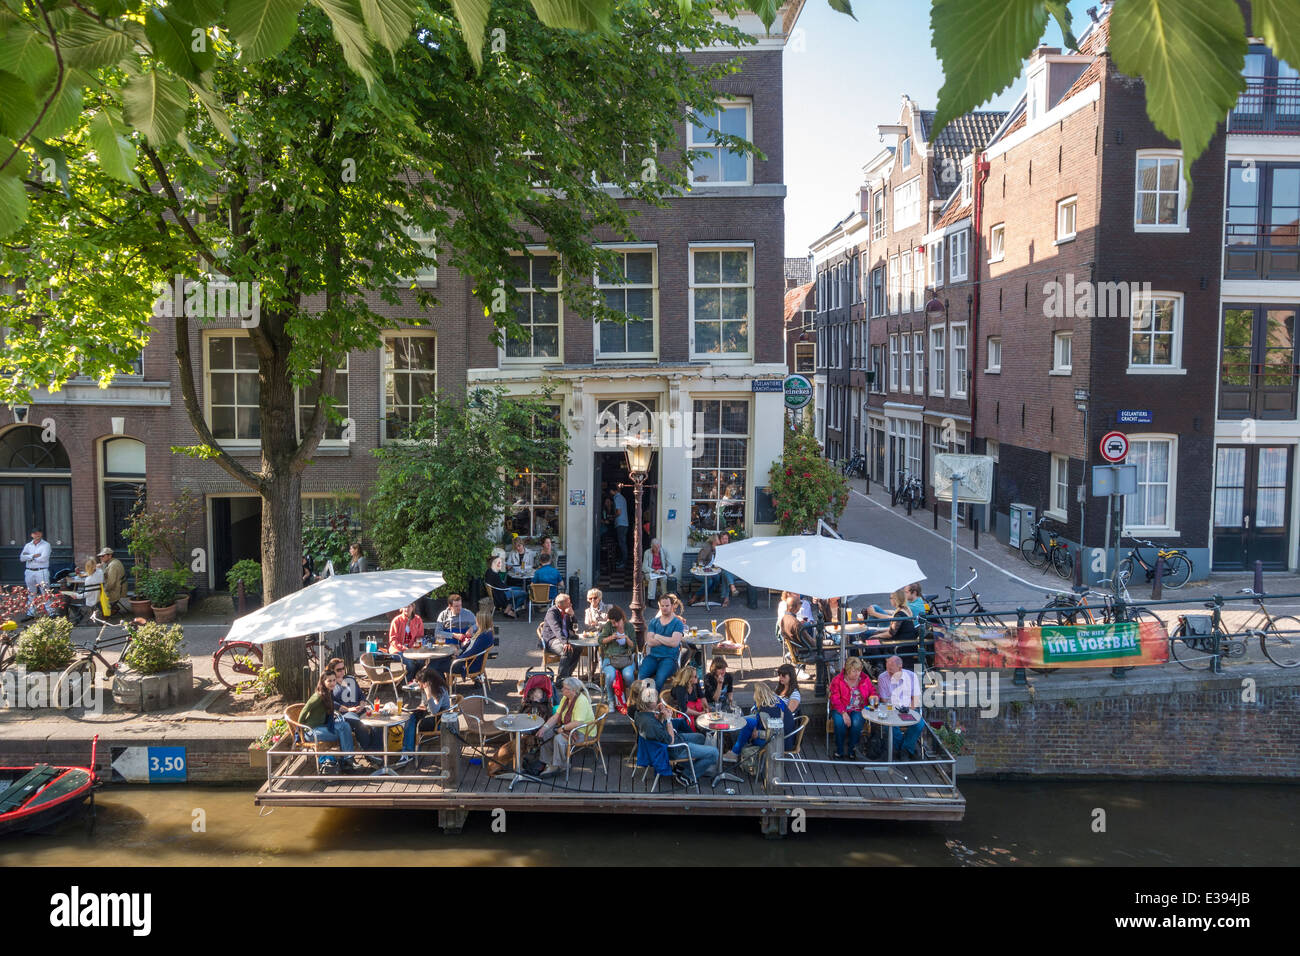 Amsterdam-Cafe ' t Smalle auf der Egelantiersgracht im Stadtteil Jordaan mit ihm eindeutig ist deck Terrasse auf Pfählen in den Kanal. Stockfoto